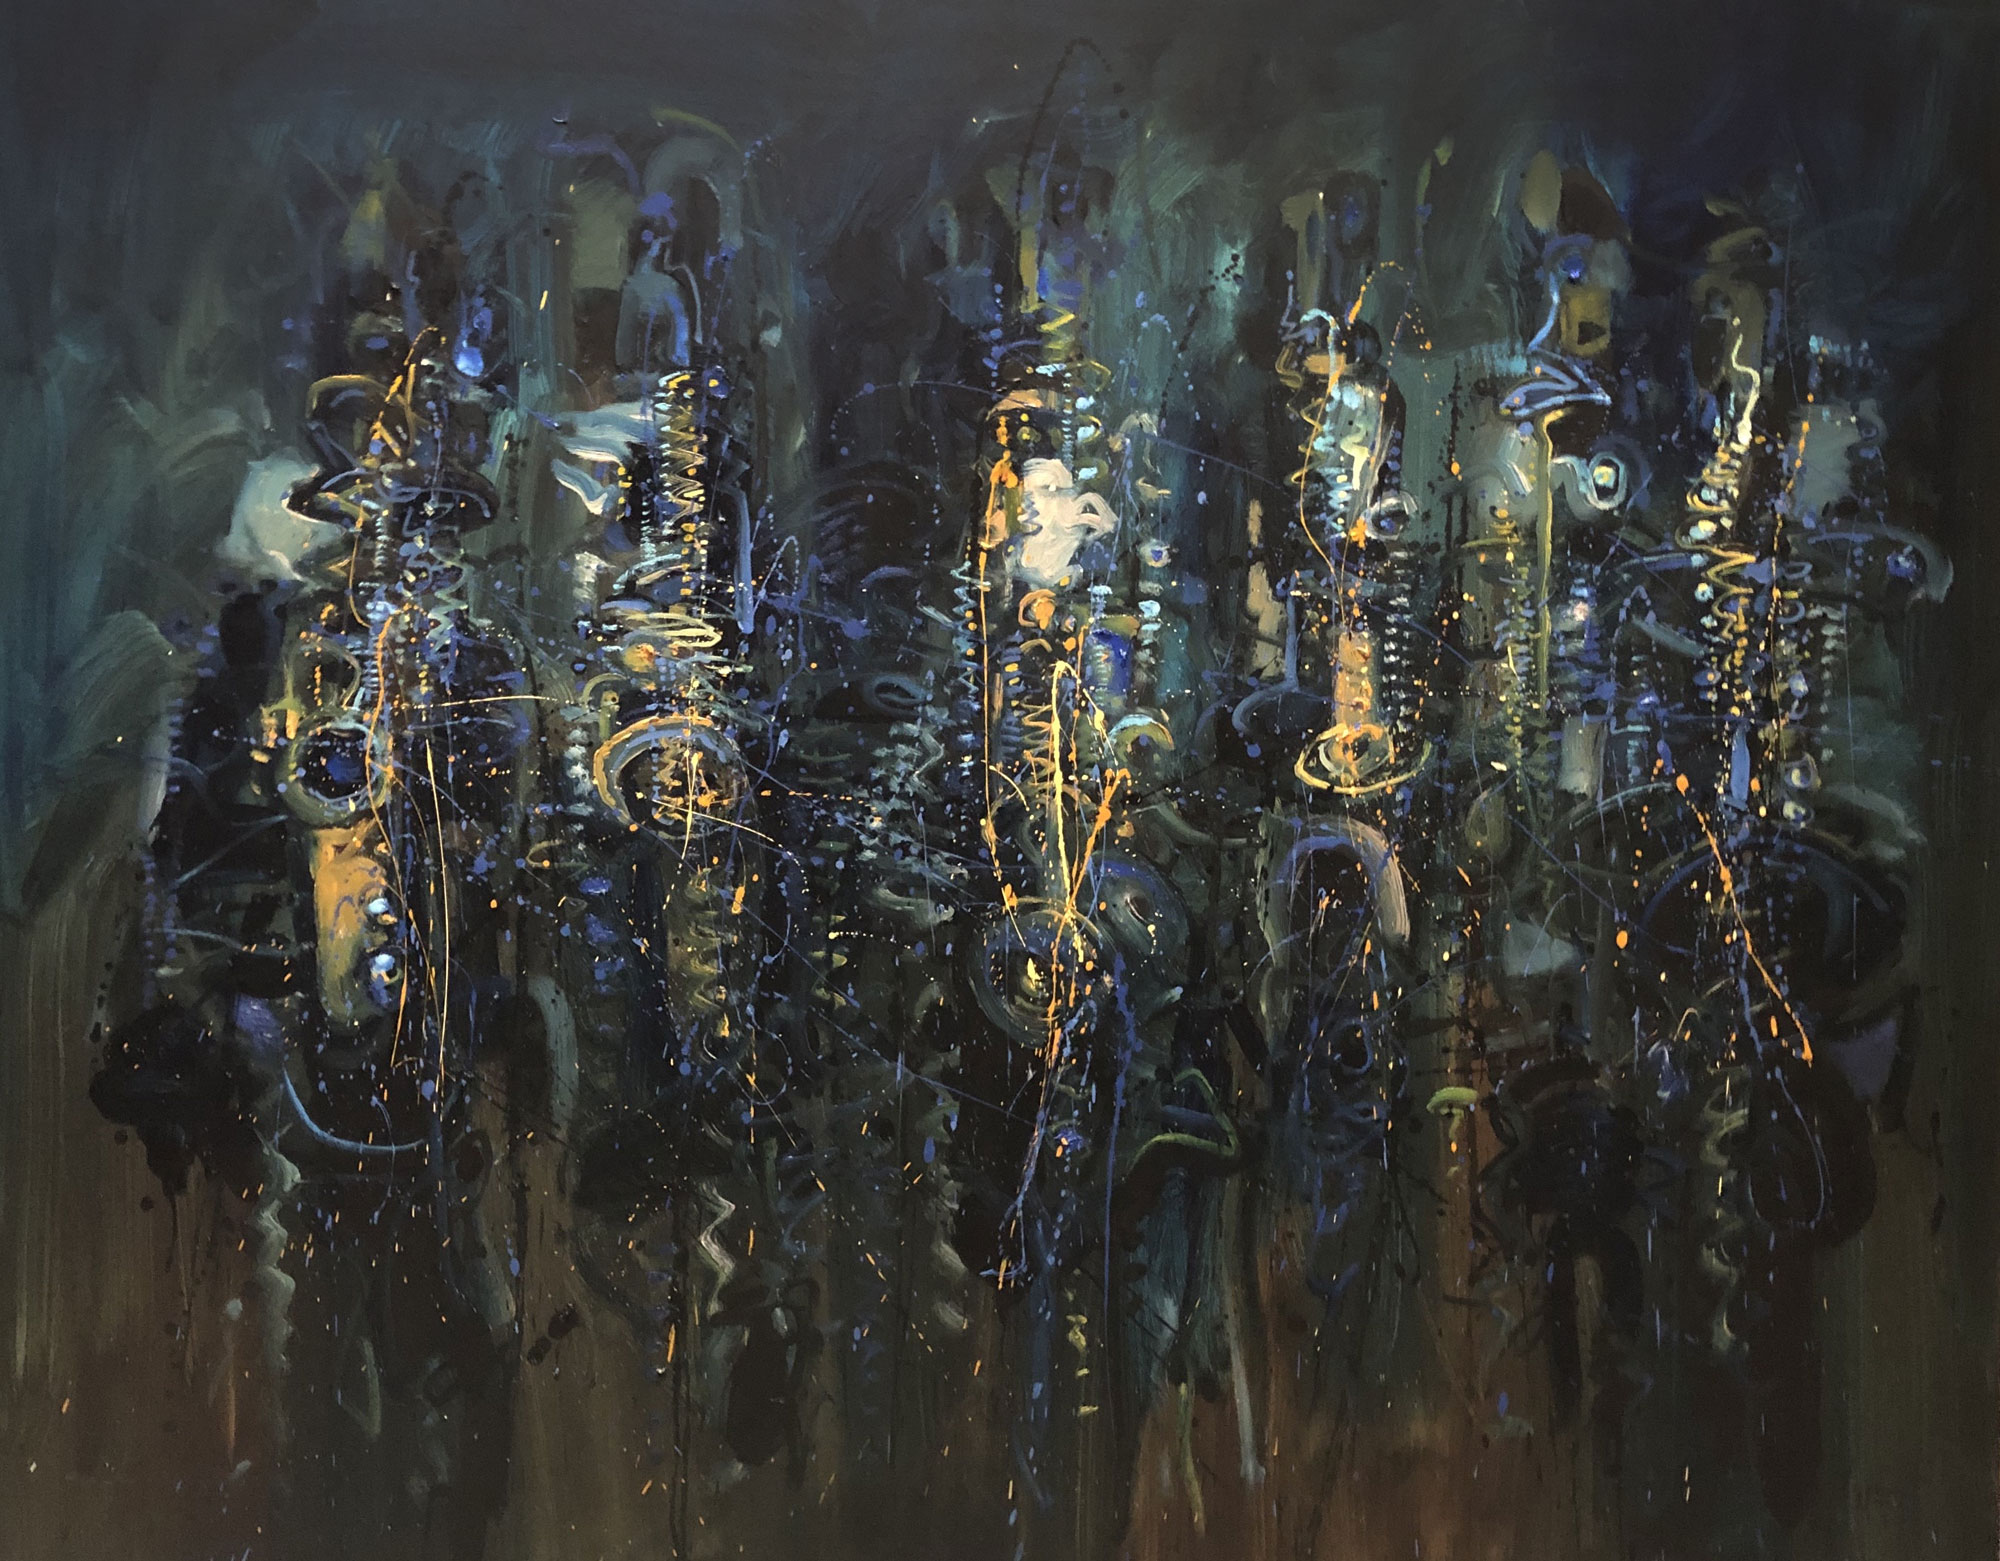 004-Los-saxofones-de-Rembrandt-II-2019-oleo-sobre-tela-de-120-x-150-cm